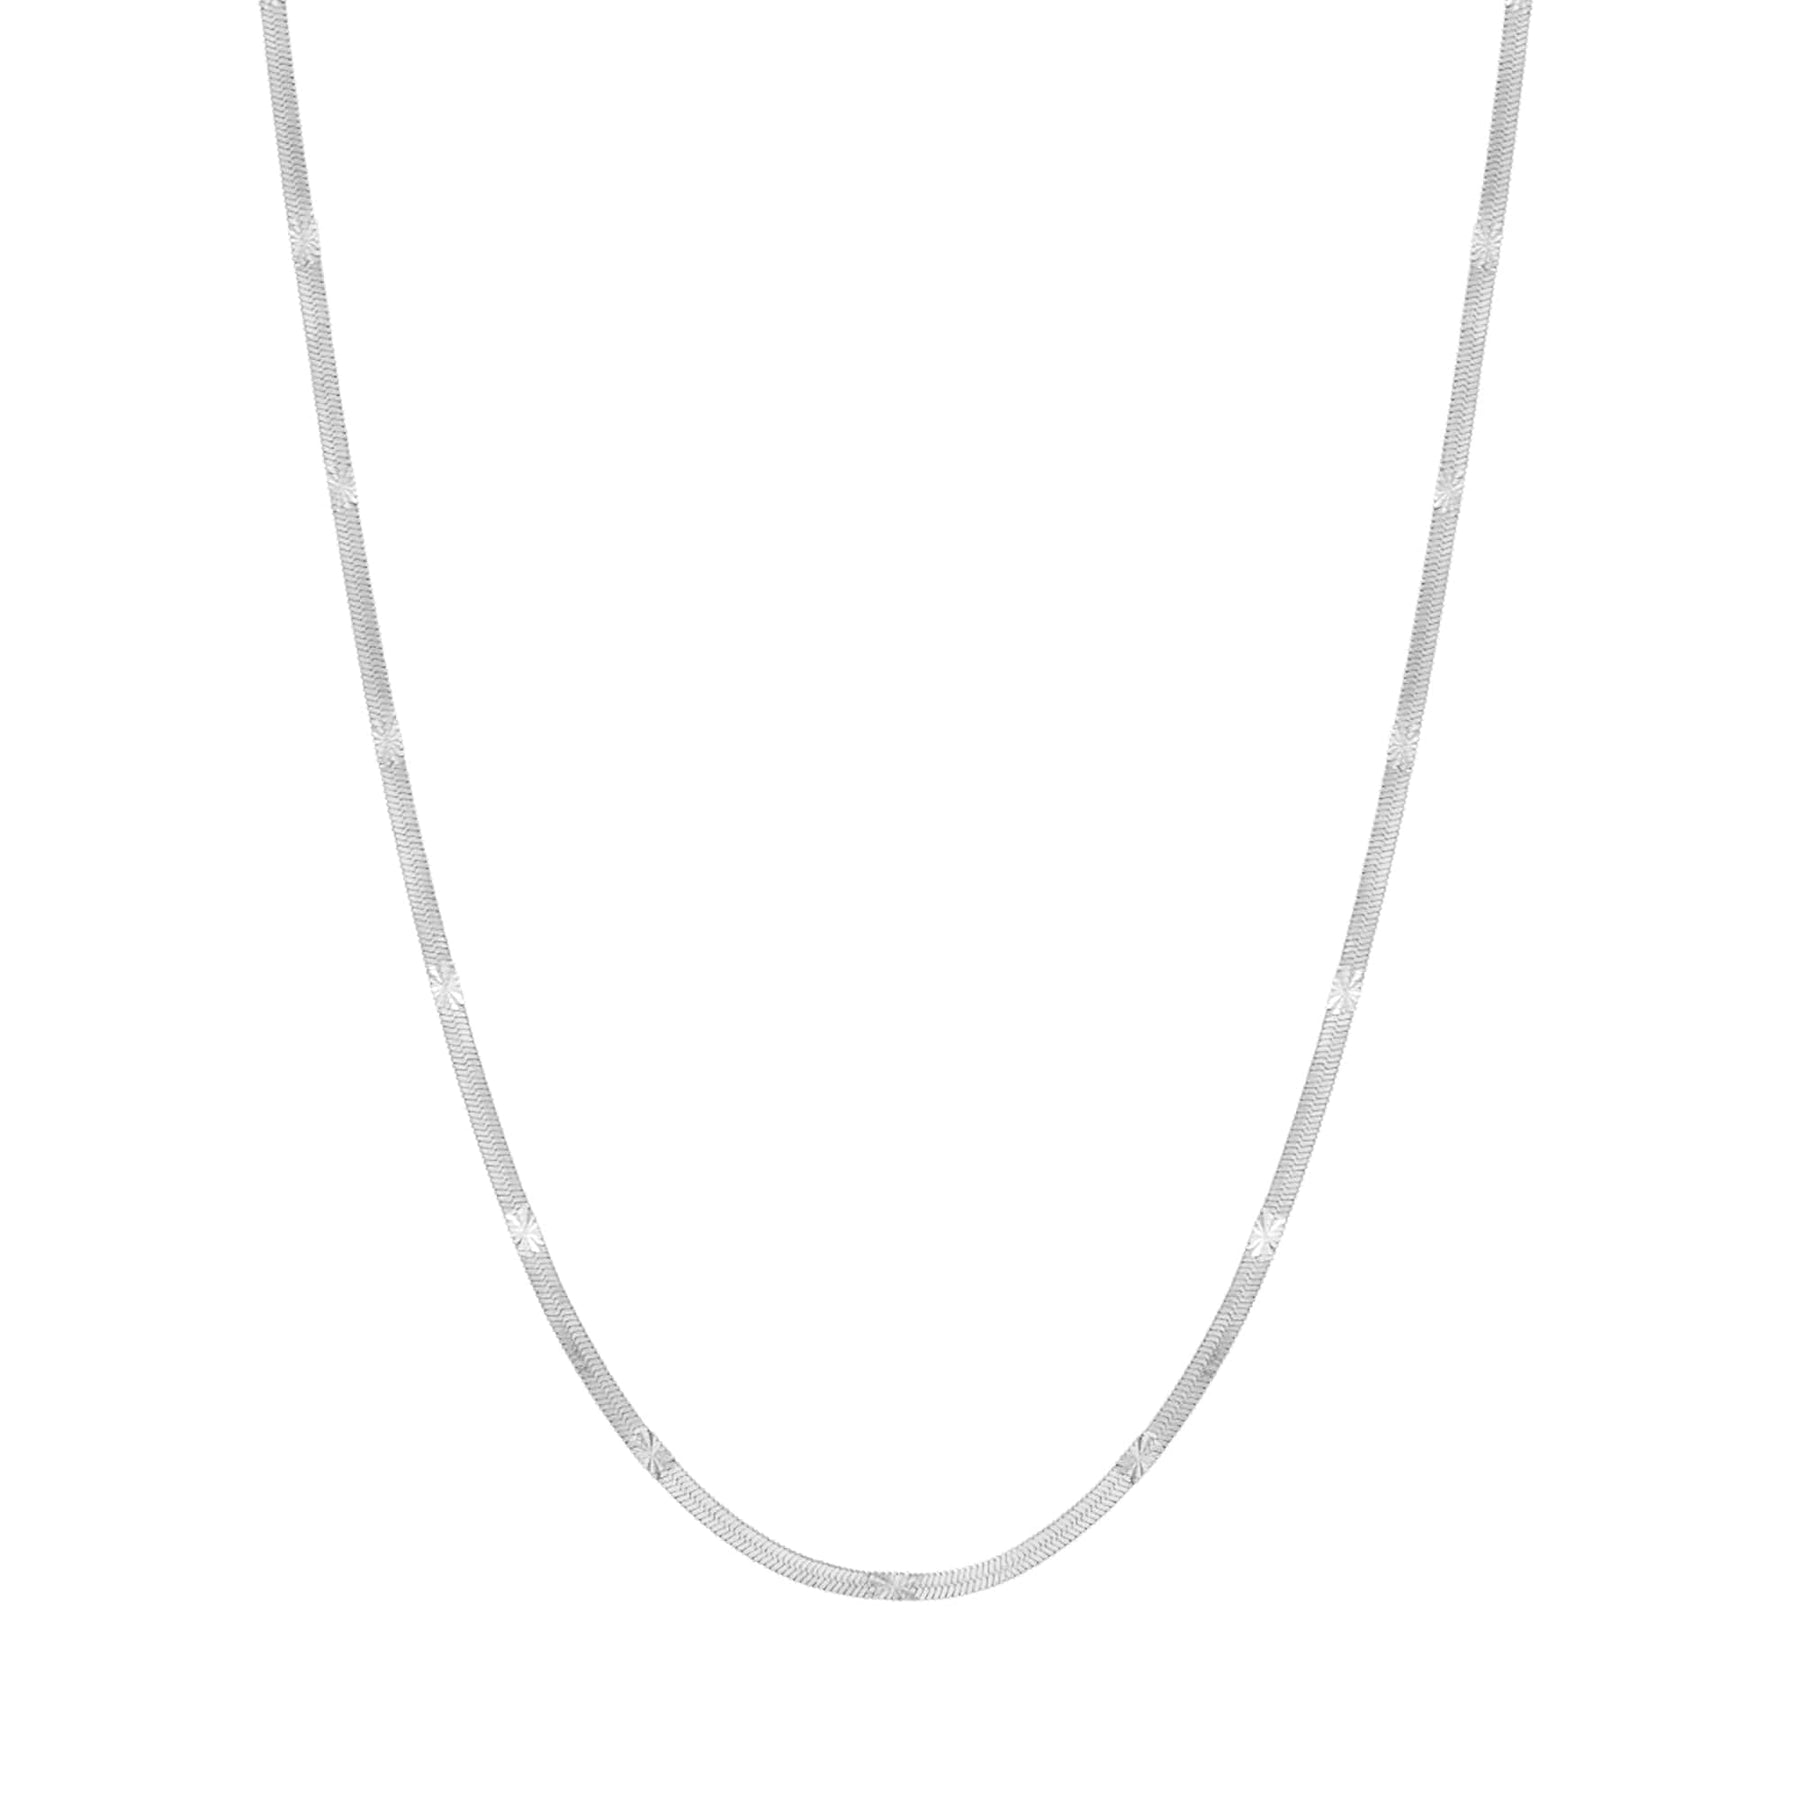 BohoMoon Stainless Steel Astrid Herringbone Necklace Silver